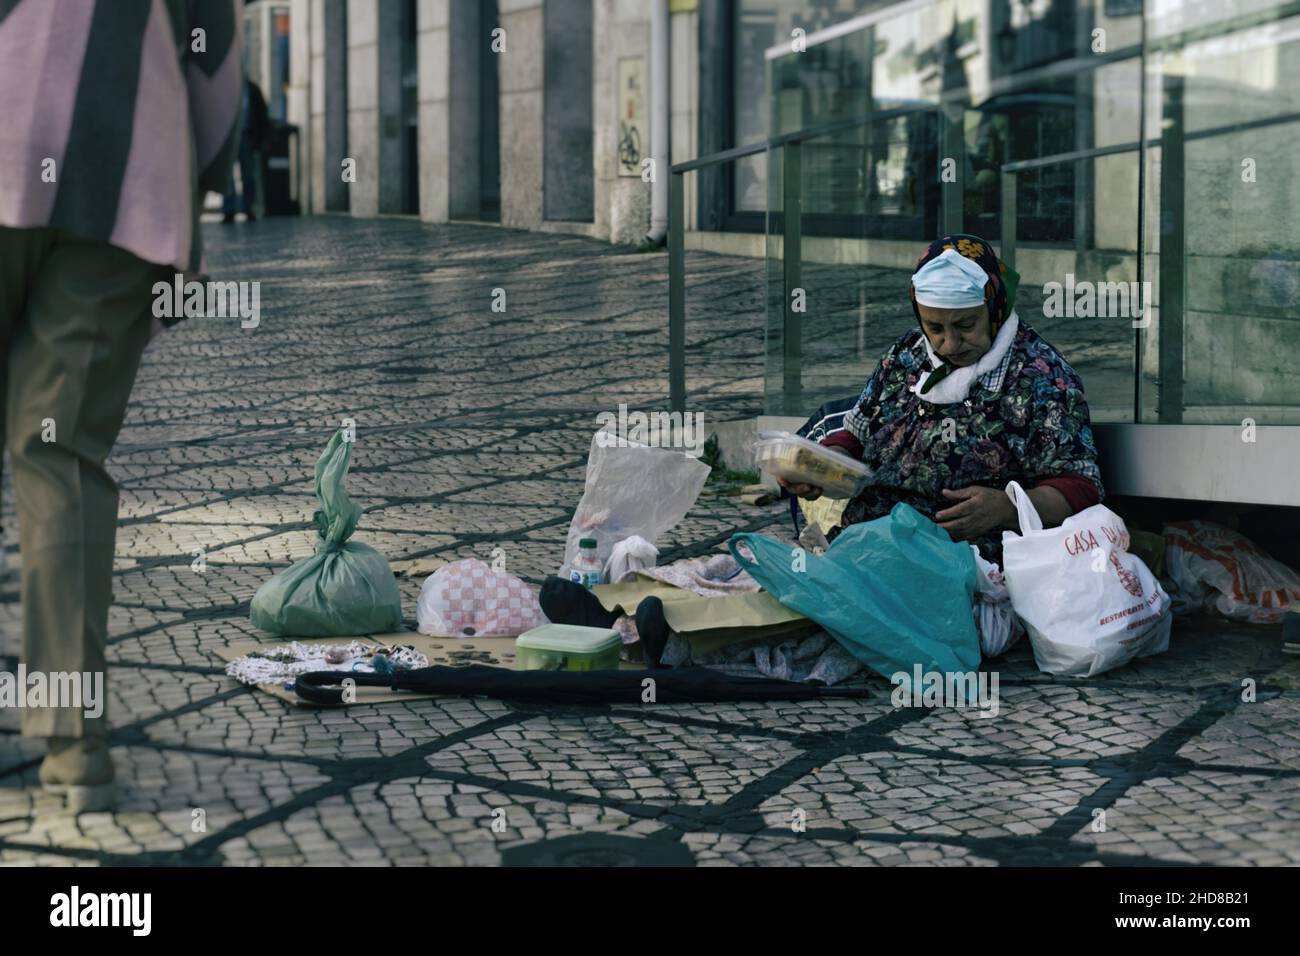 Lisboa,Portugal,octobre 27,2021:Childa Une femme, le vieux mendiant d'Europe de l'est se préparait pour le déjeuner. Banque D'Images